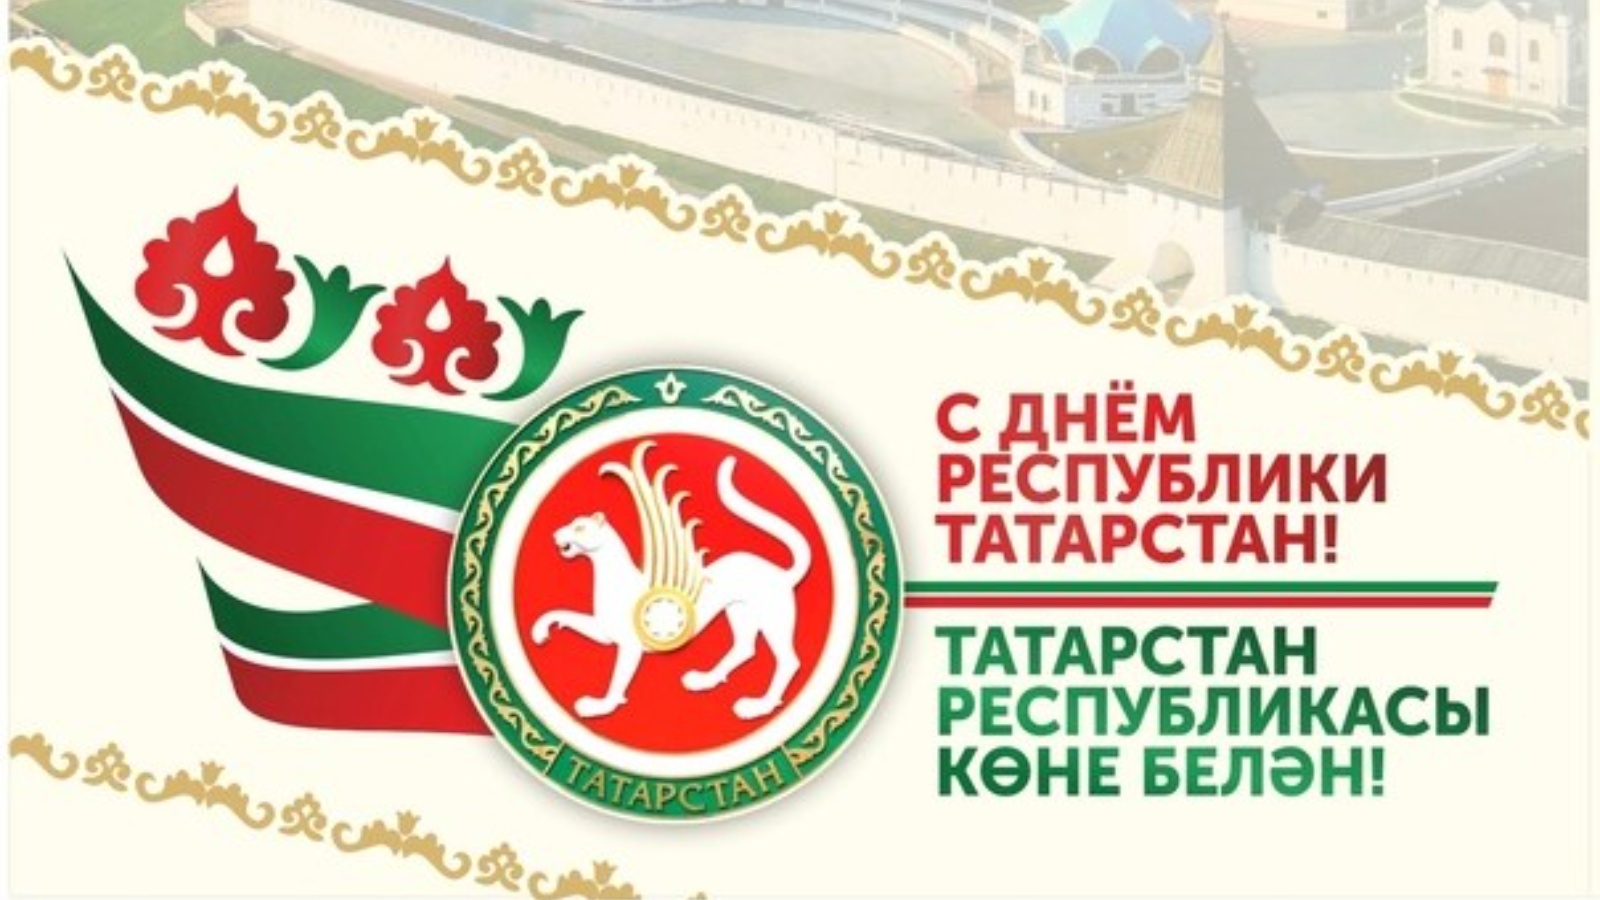 Мой любимый Татарстан к Дню Республики Татарстана